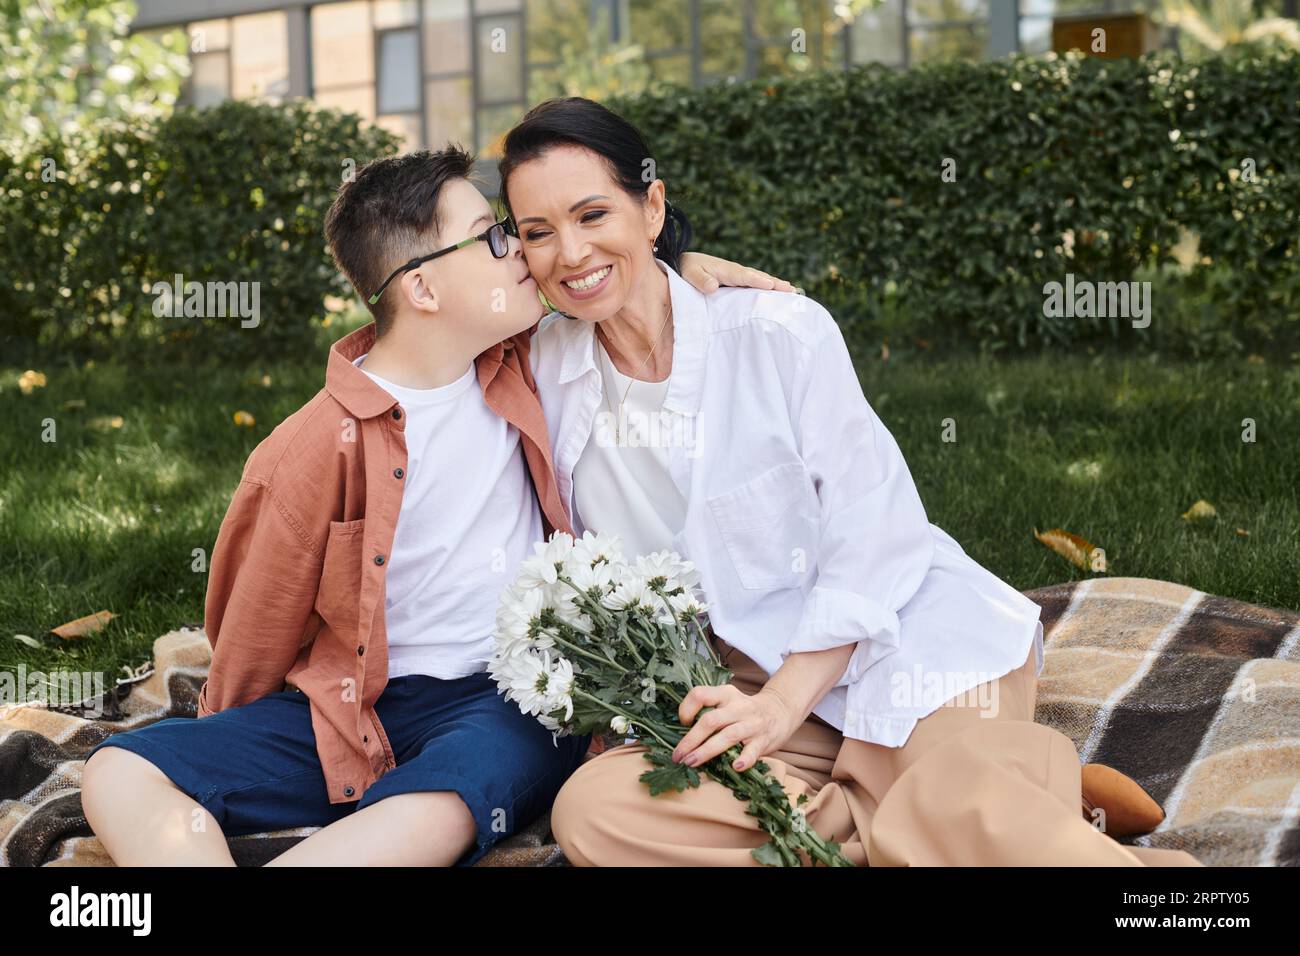 Kind mit Down-Syndrom, das Mutter küsst, die mit Blumen auf einer Decke im Park sitzt, bedingungslose Liebe Stockfoto